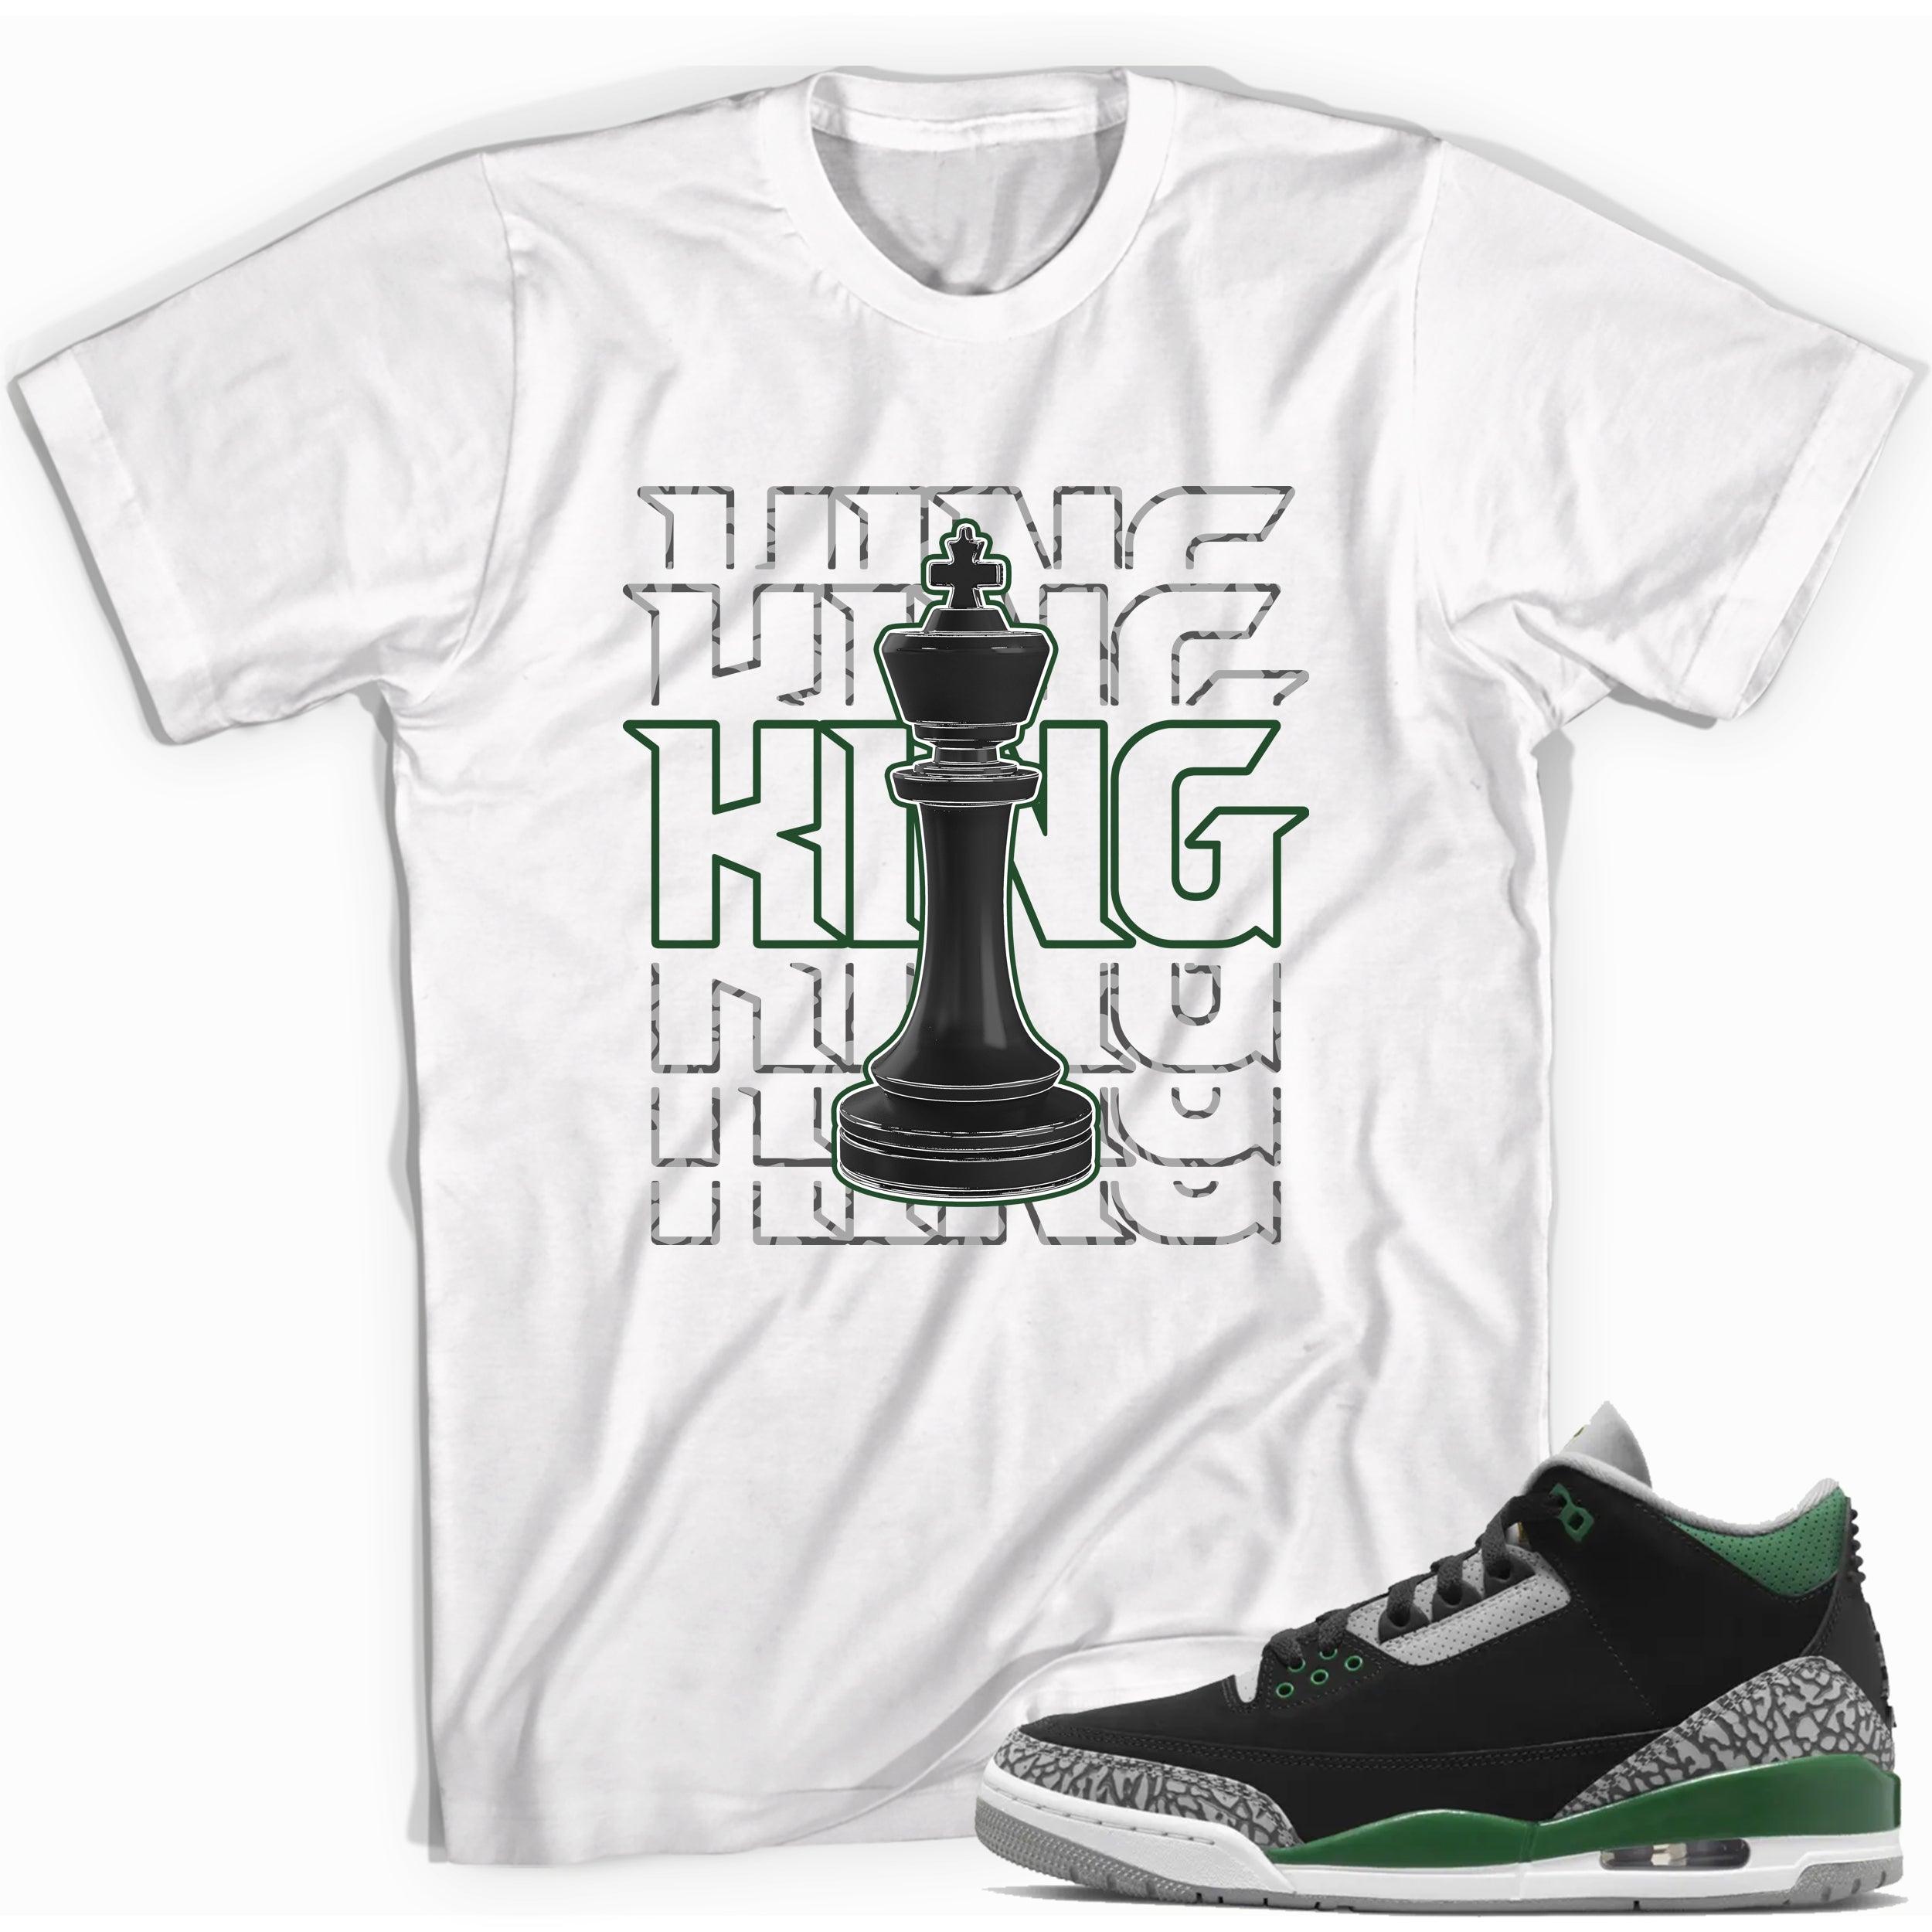 King Shirt Jordan 3 Pine Green photo